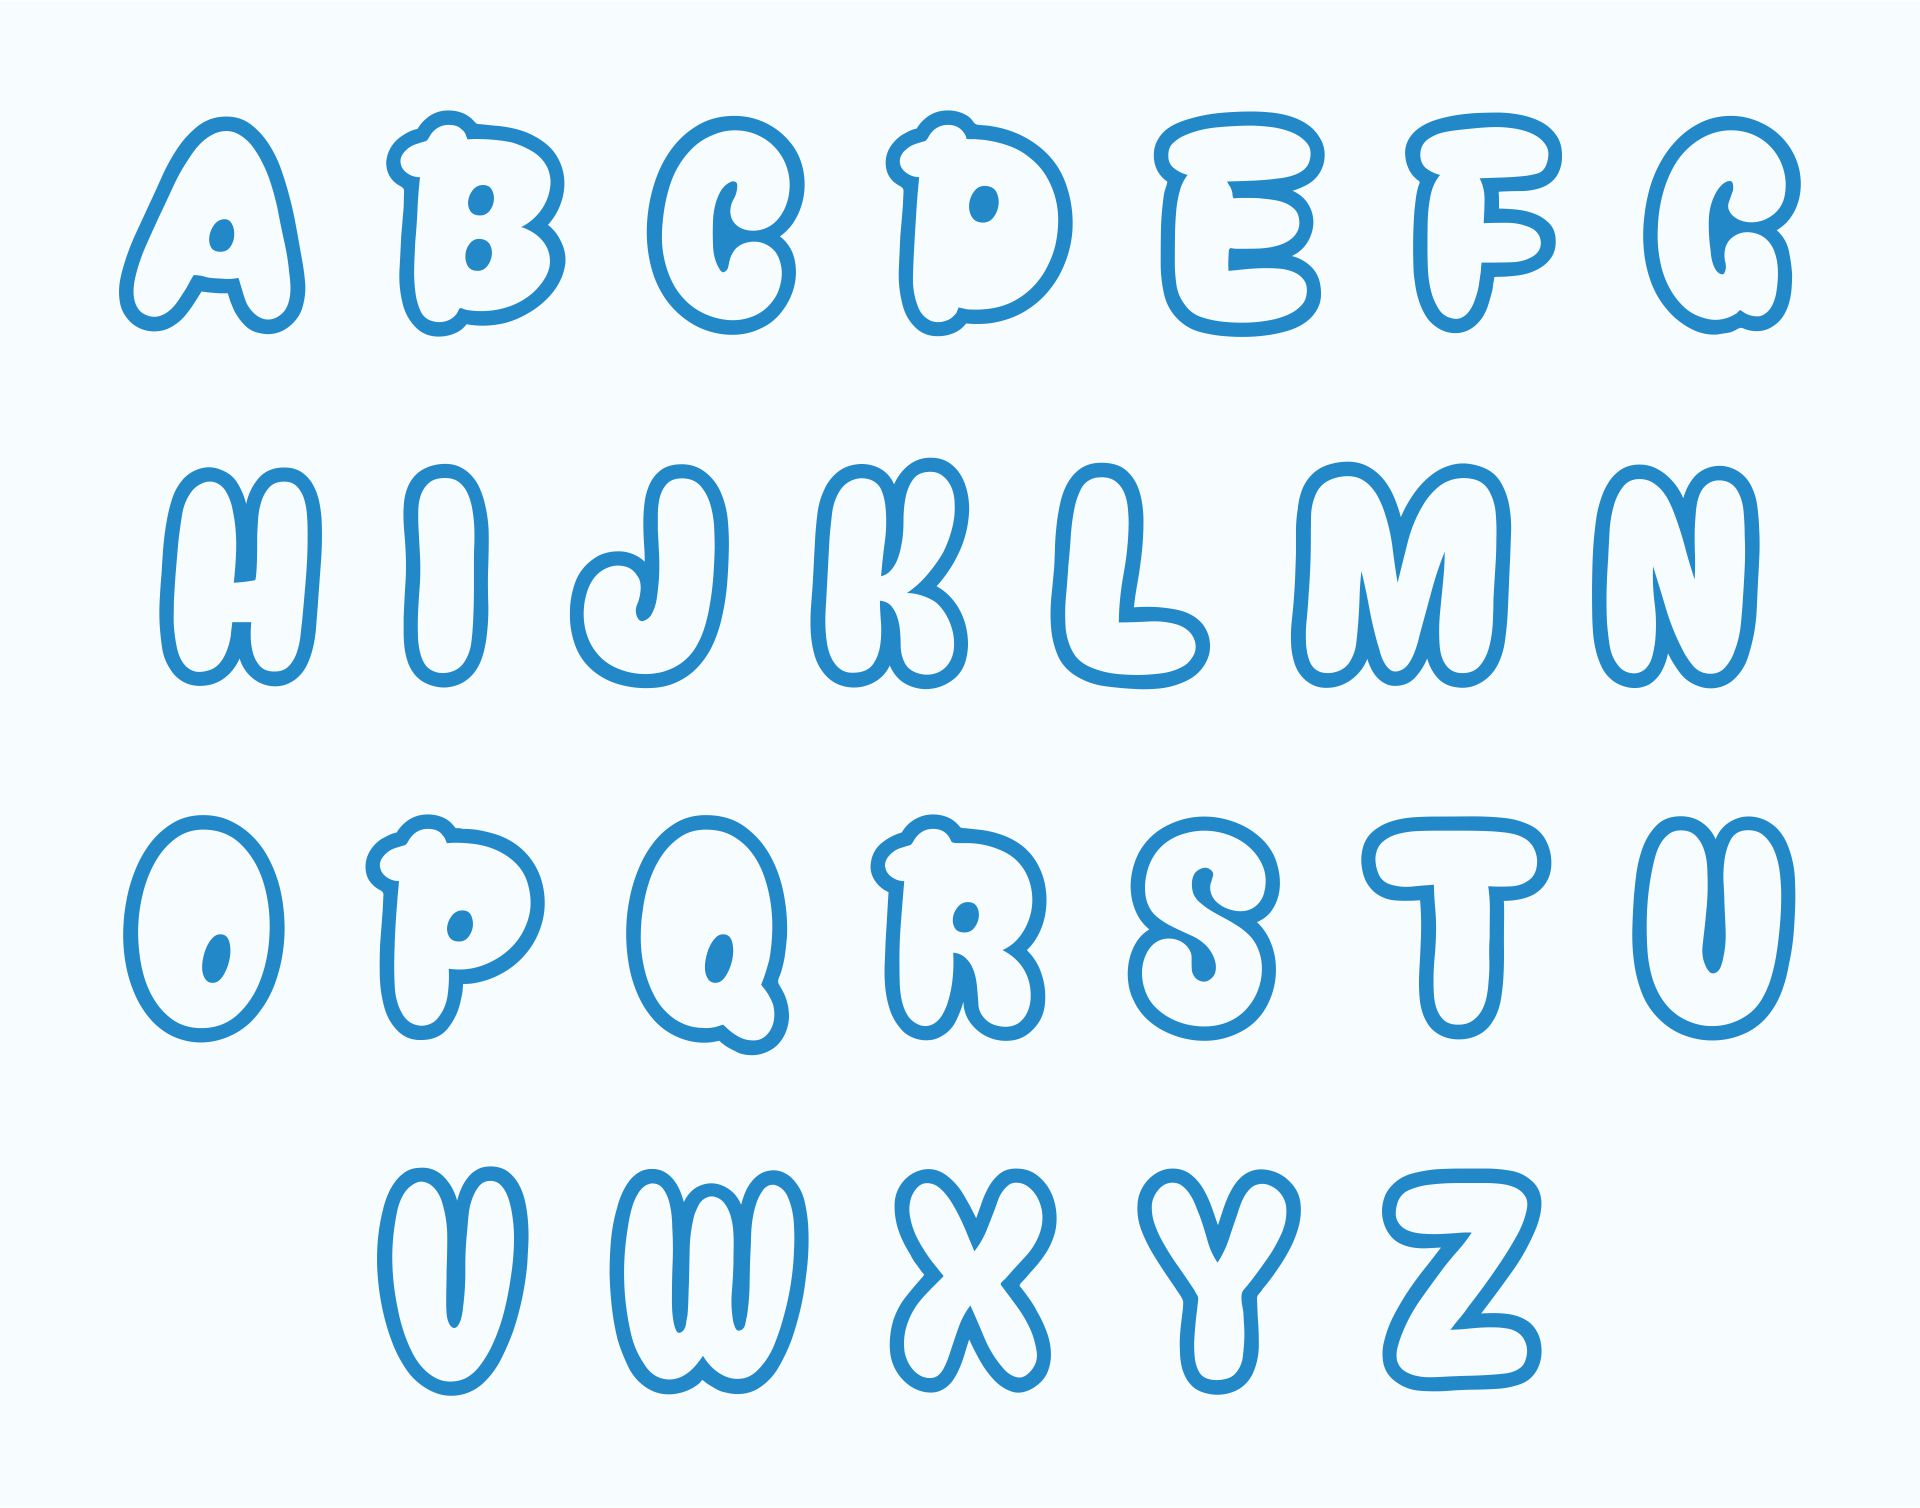 Printable Bubble Letters